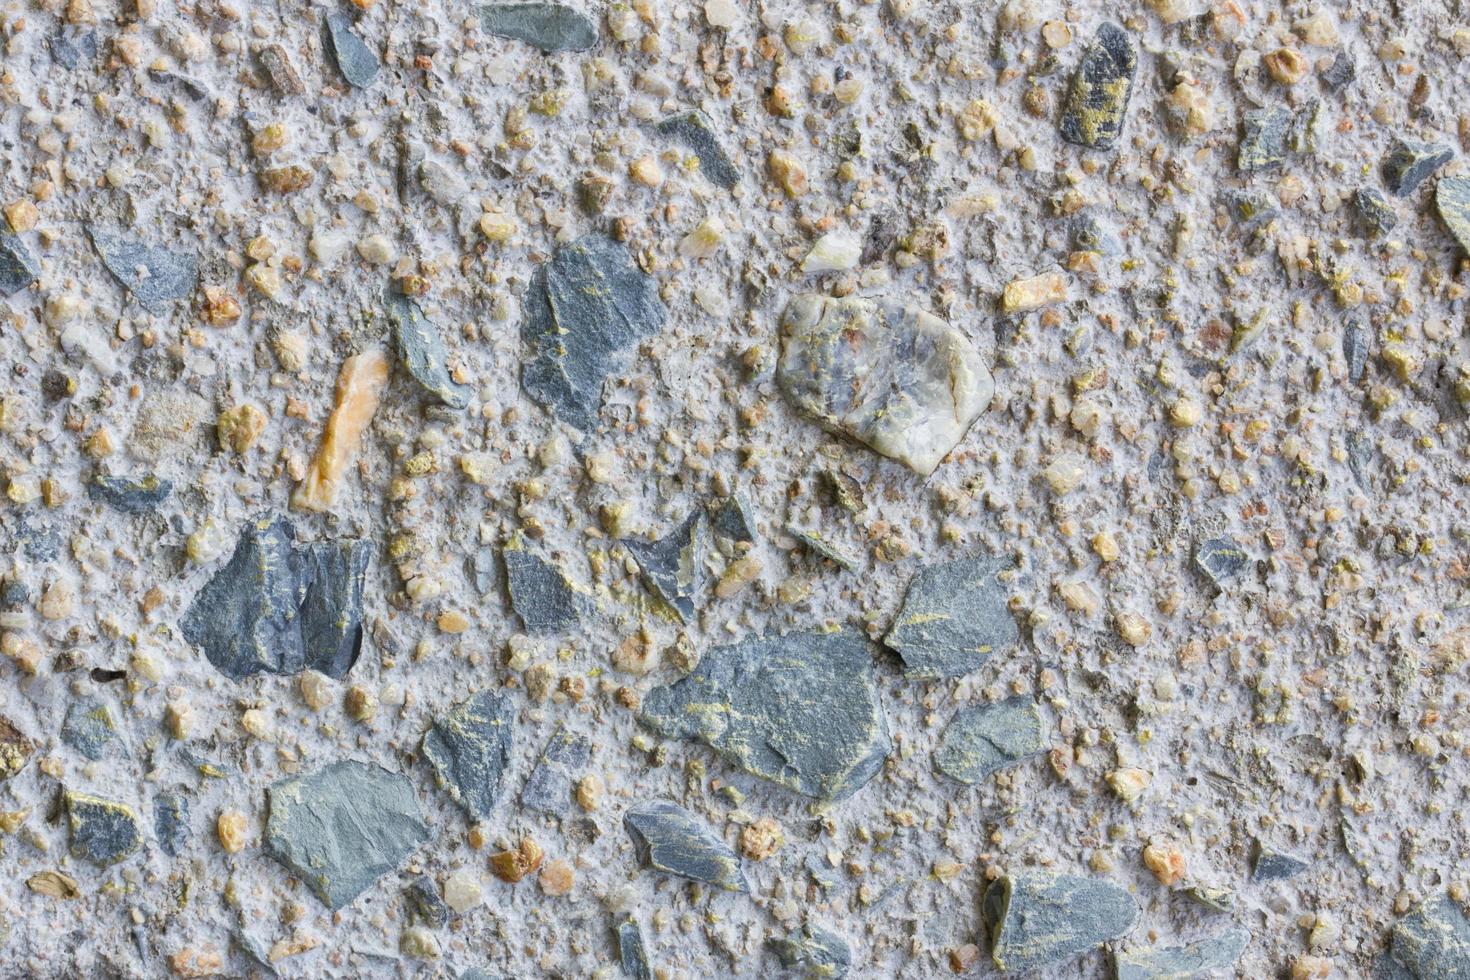 grunge graffiato sporco muro di cemento, sfondo foto